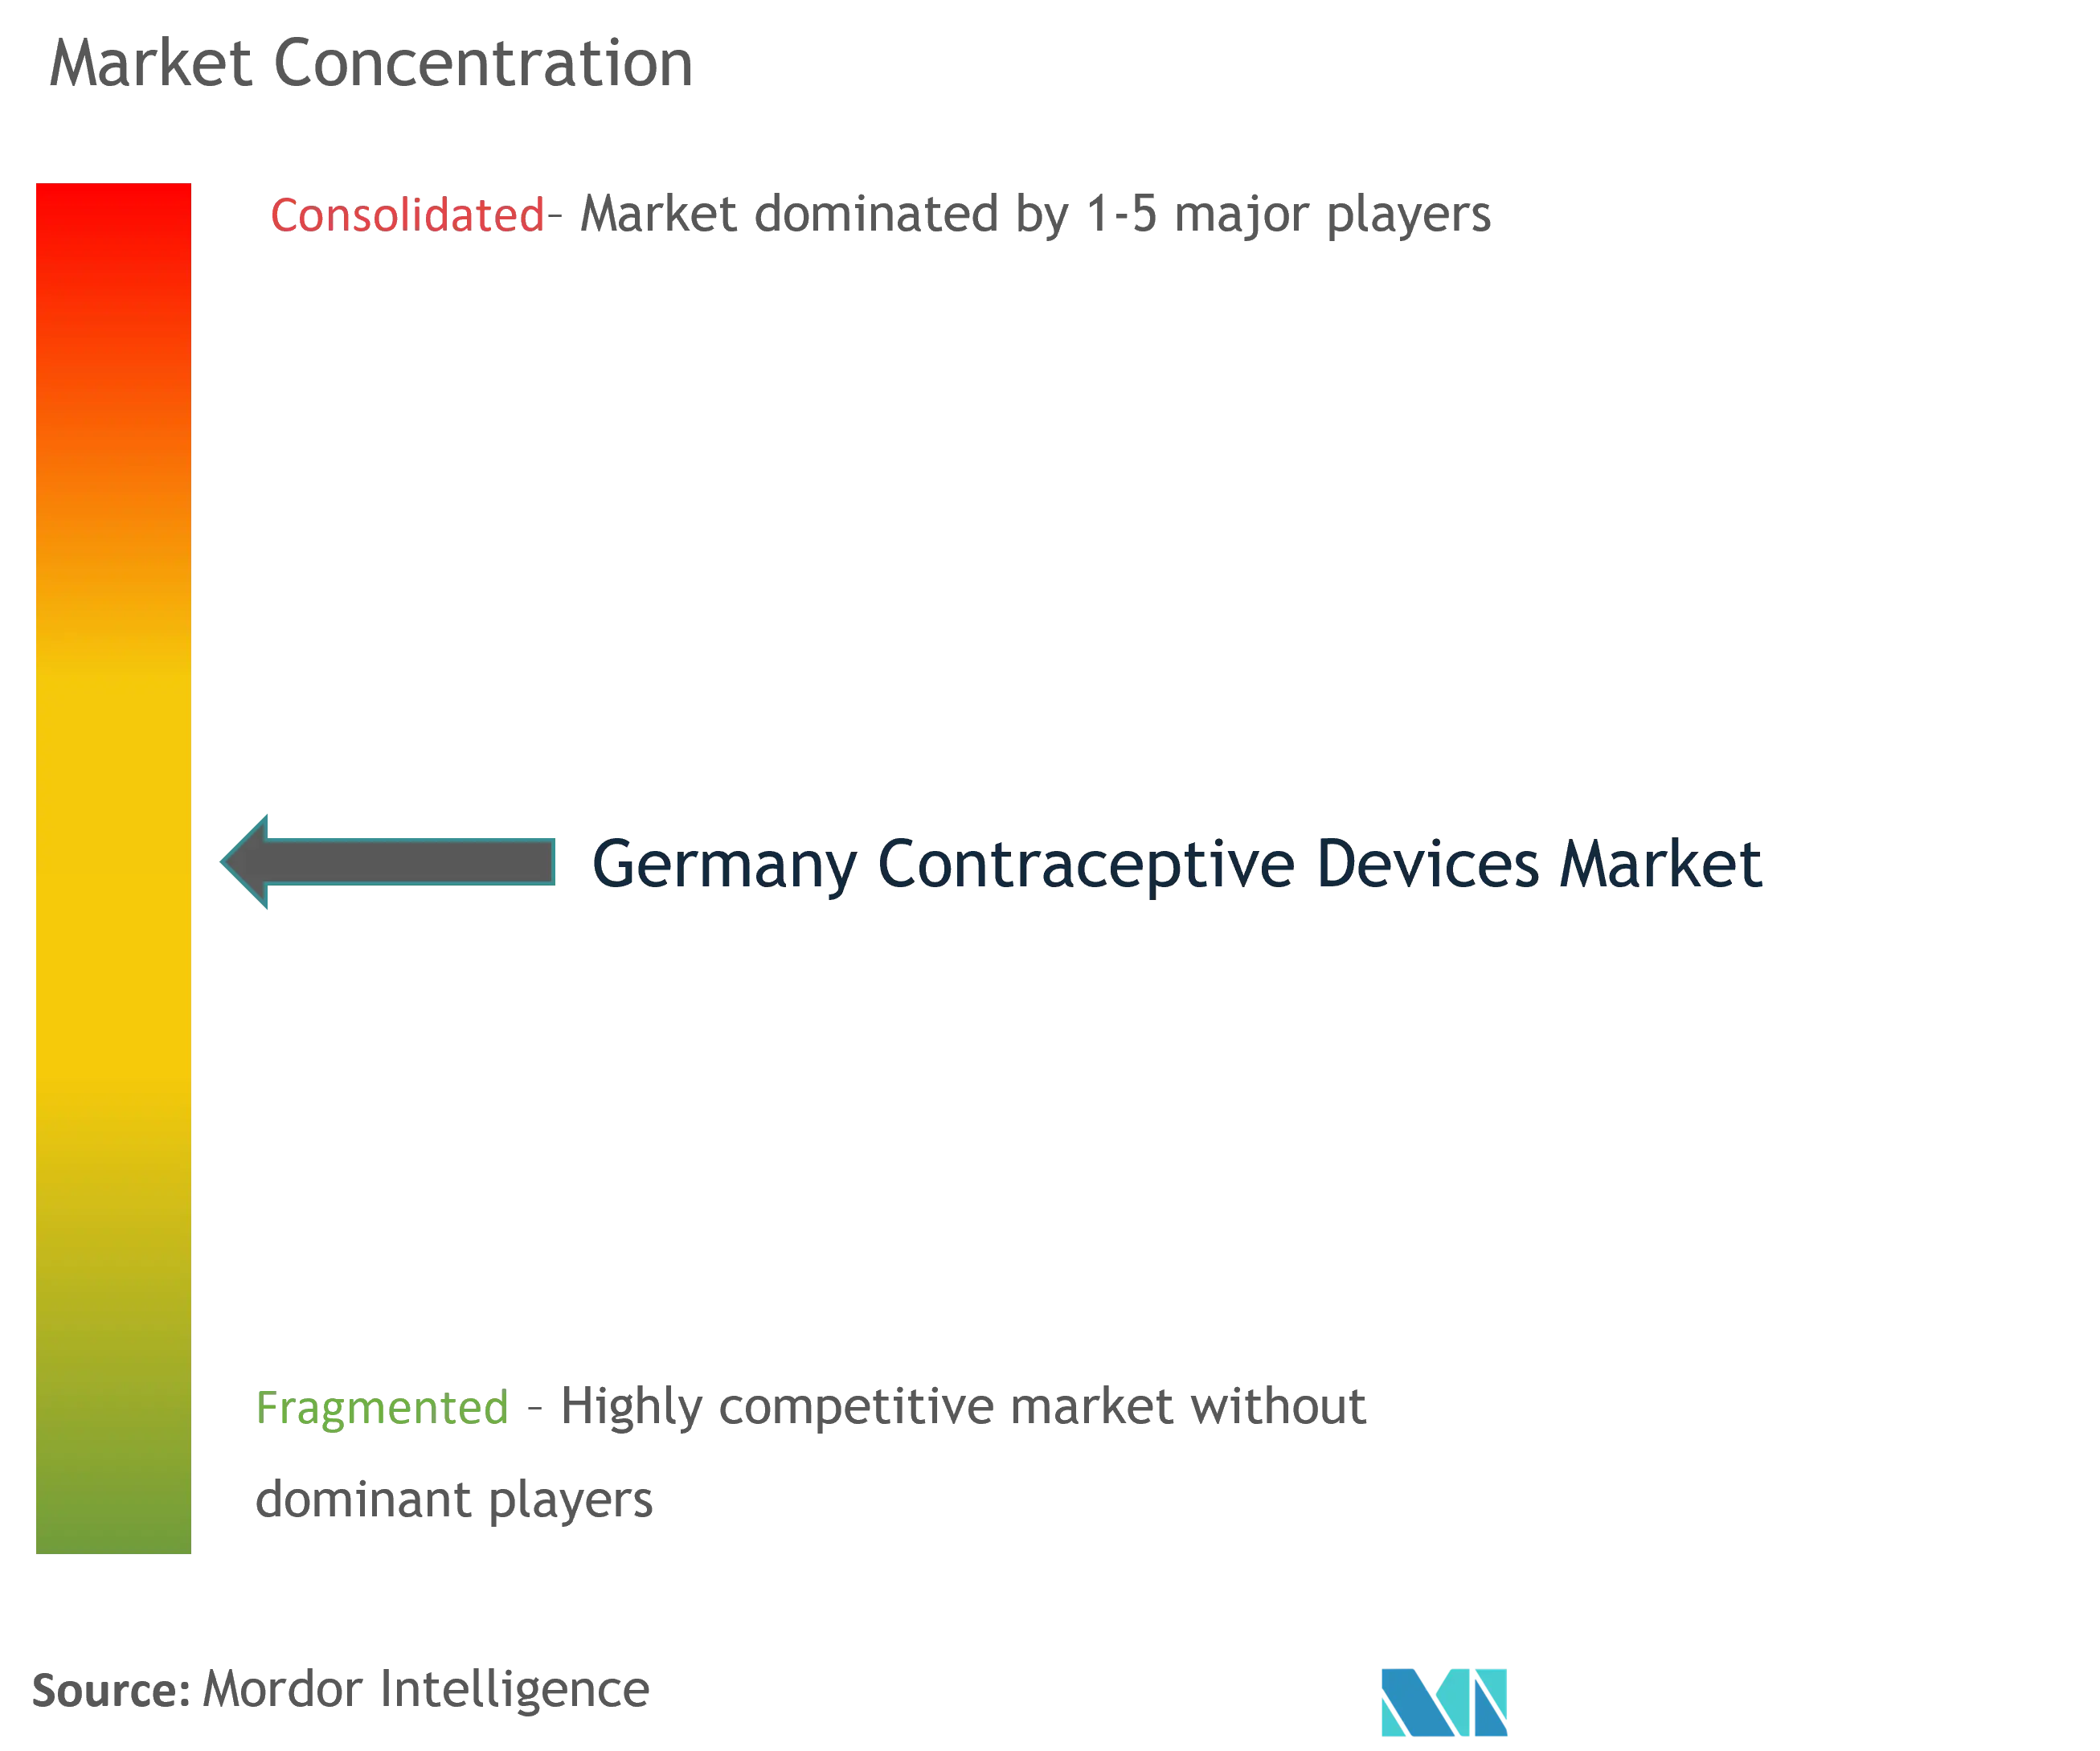 Allemagne Dispositifs contraceptifsConcentration du marché